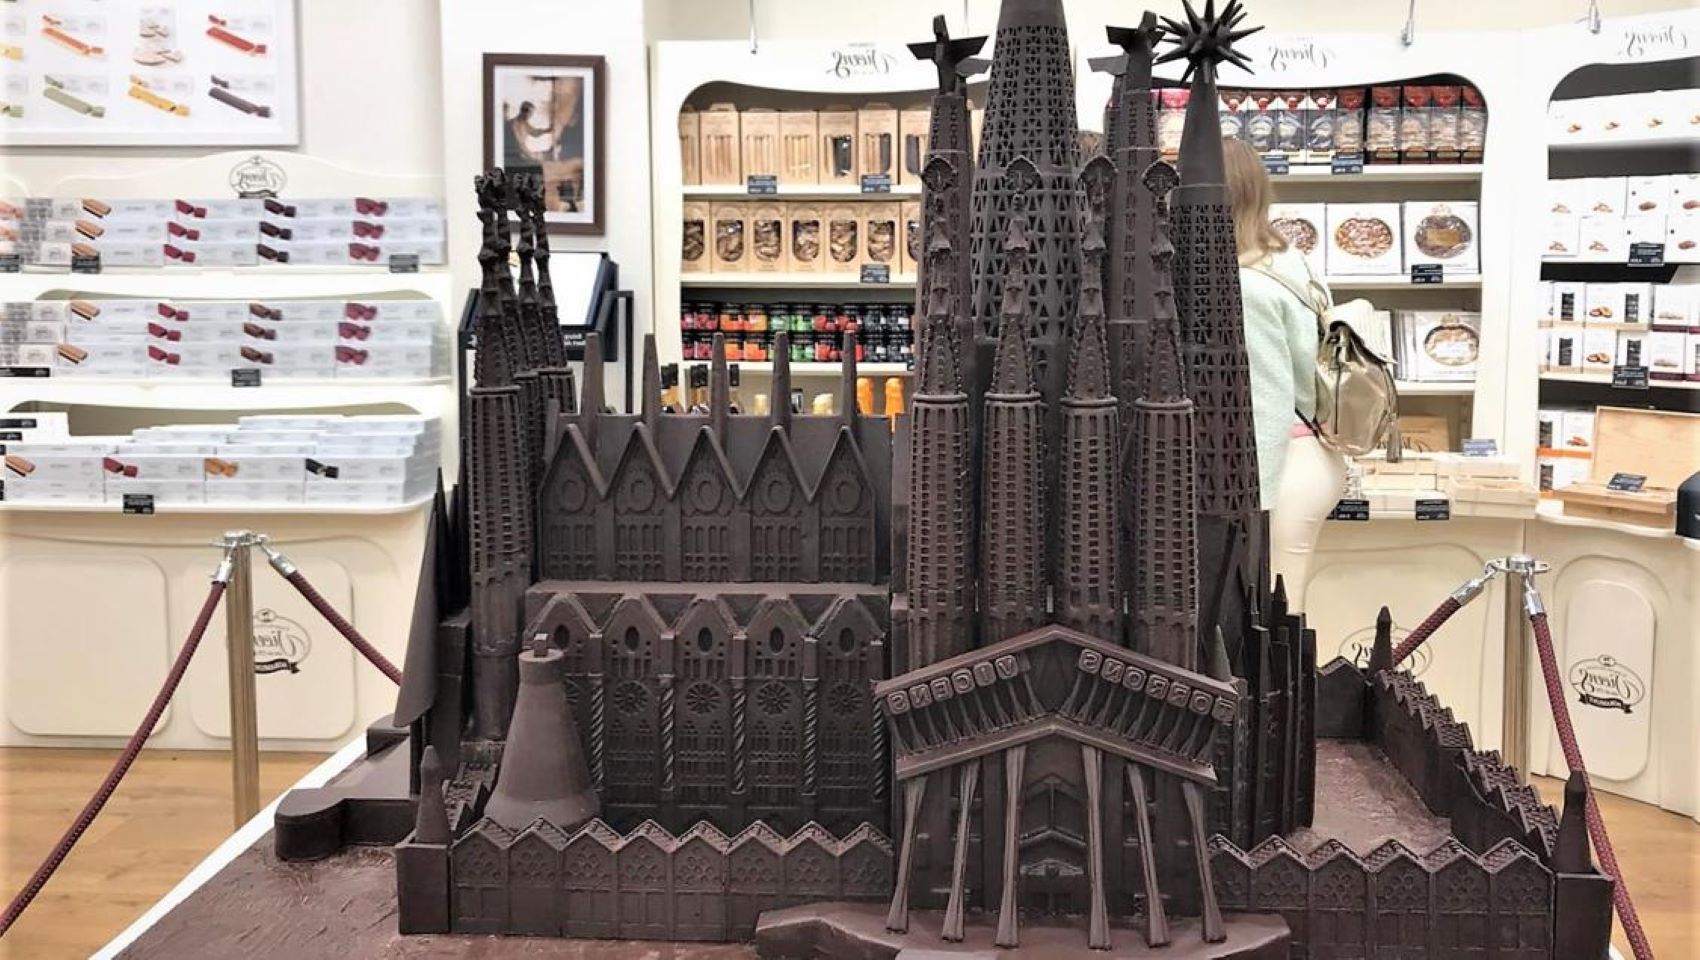 Torrons Vicens construye la Sagrada Família . 167 kg de Chocolate negro y medio metro de altura